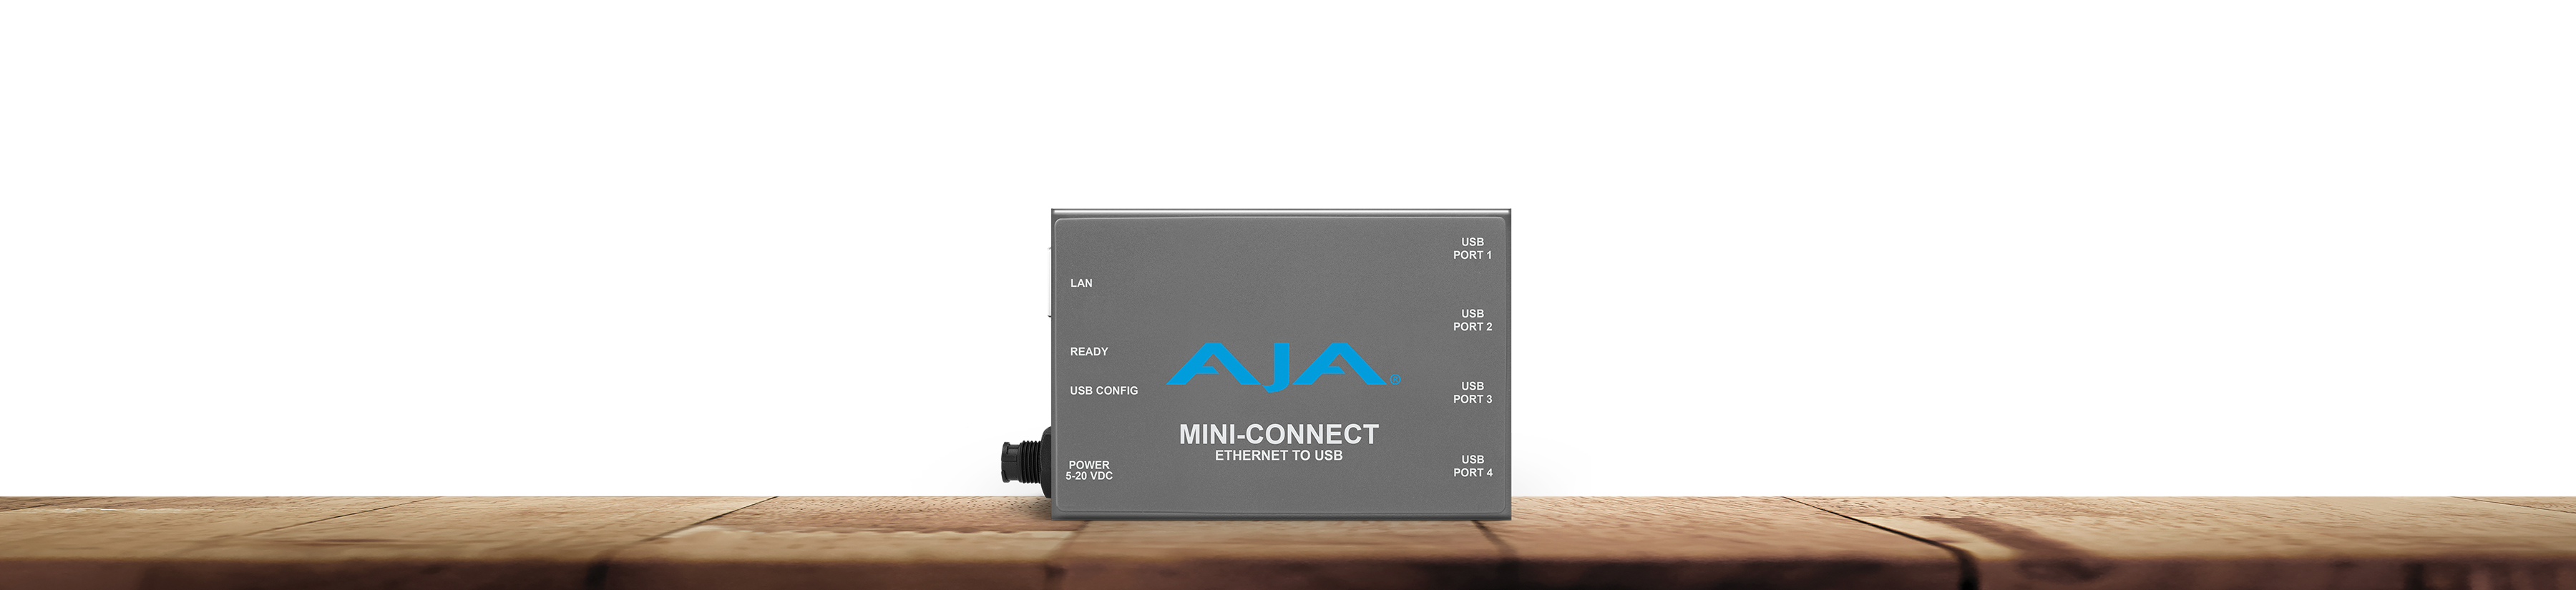 Mini-Connect